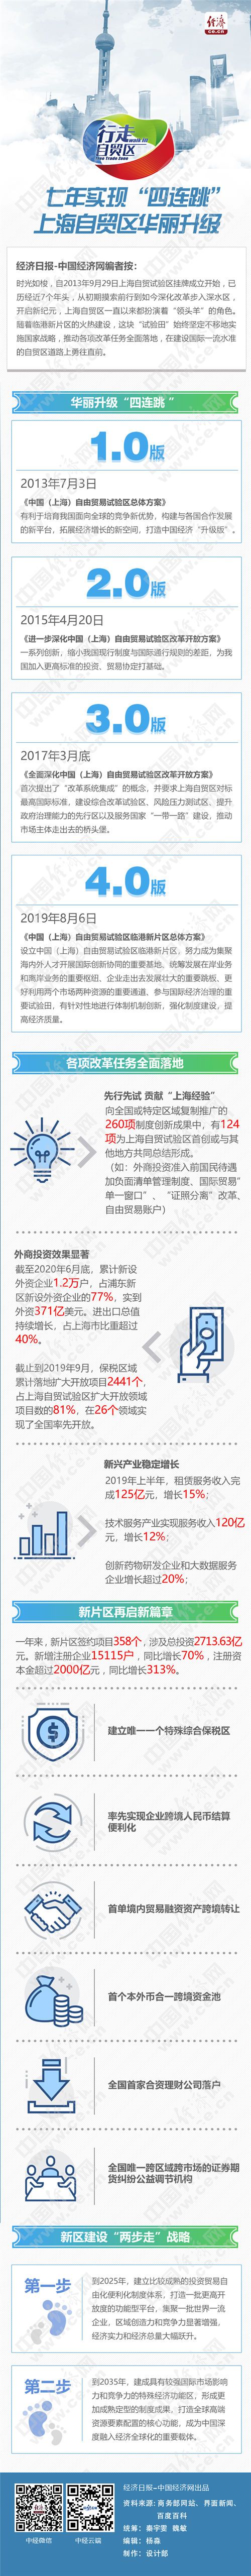 七年实现“四连跳” 上海自贸区华丽升级-中国网地产